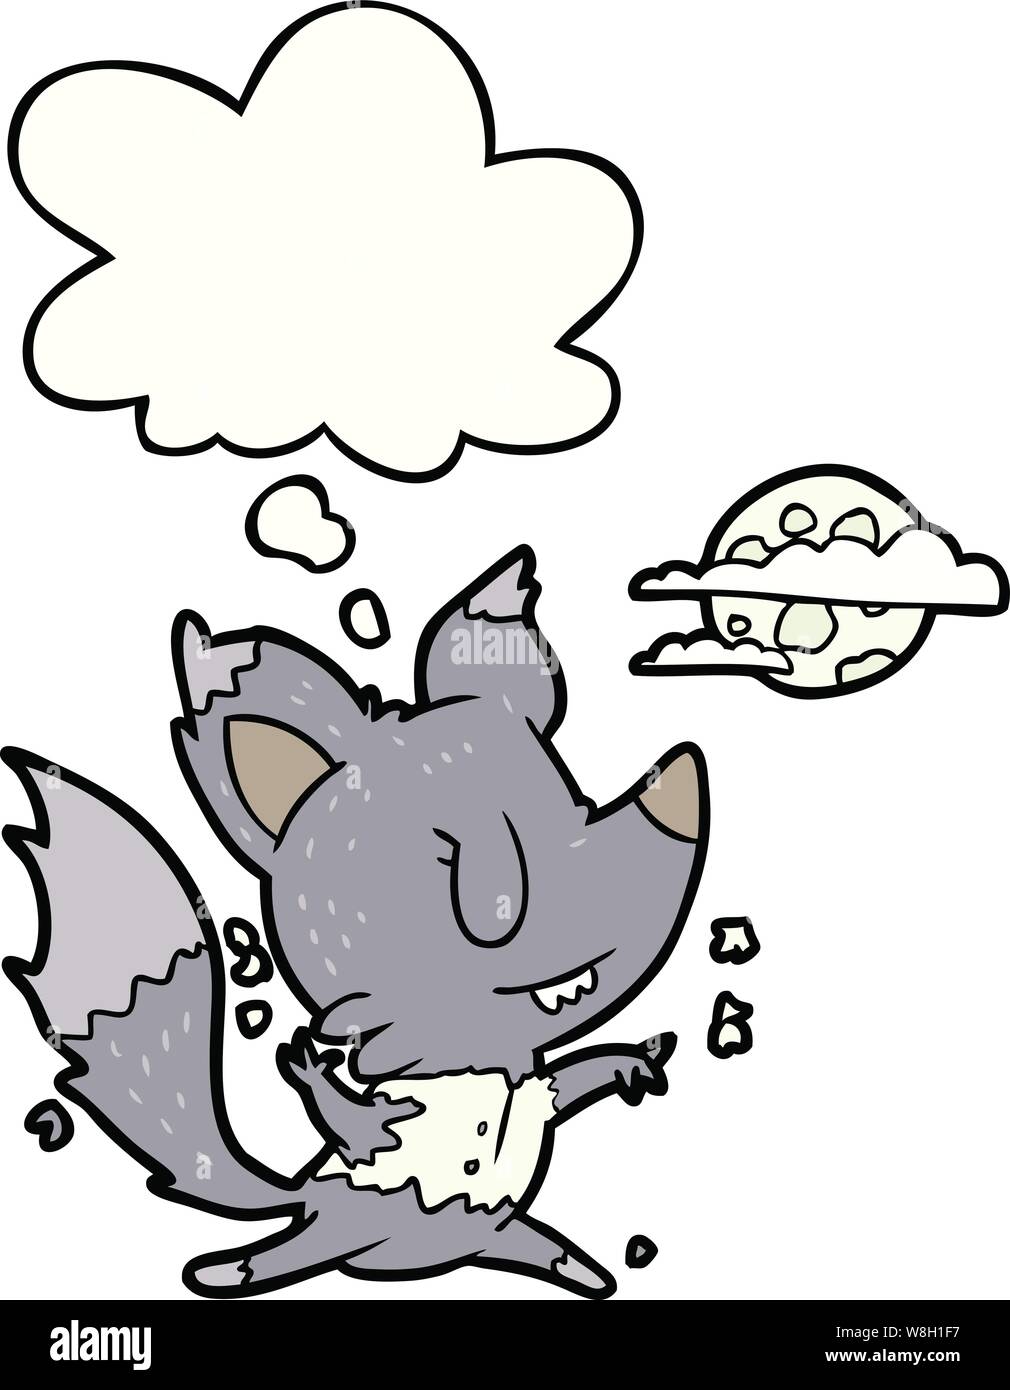 Caricature loup-garou de changer en lune avec bulle pensée Illustration de Vecteur